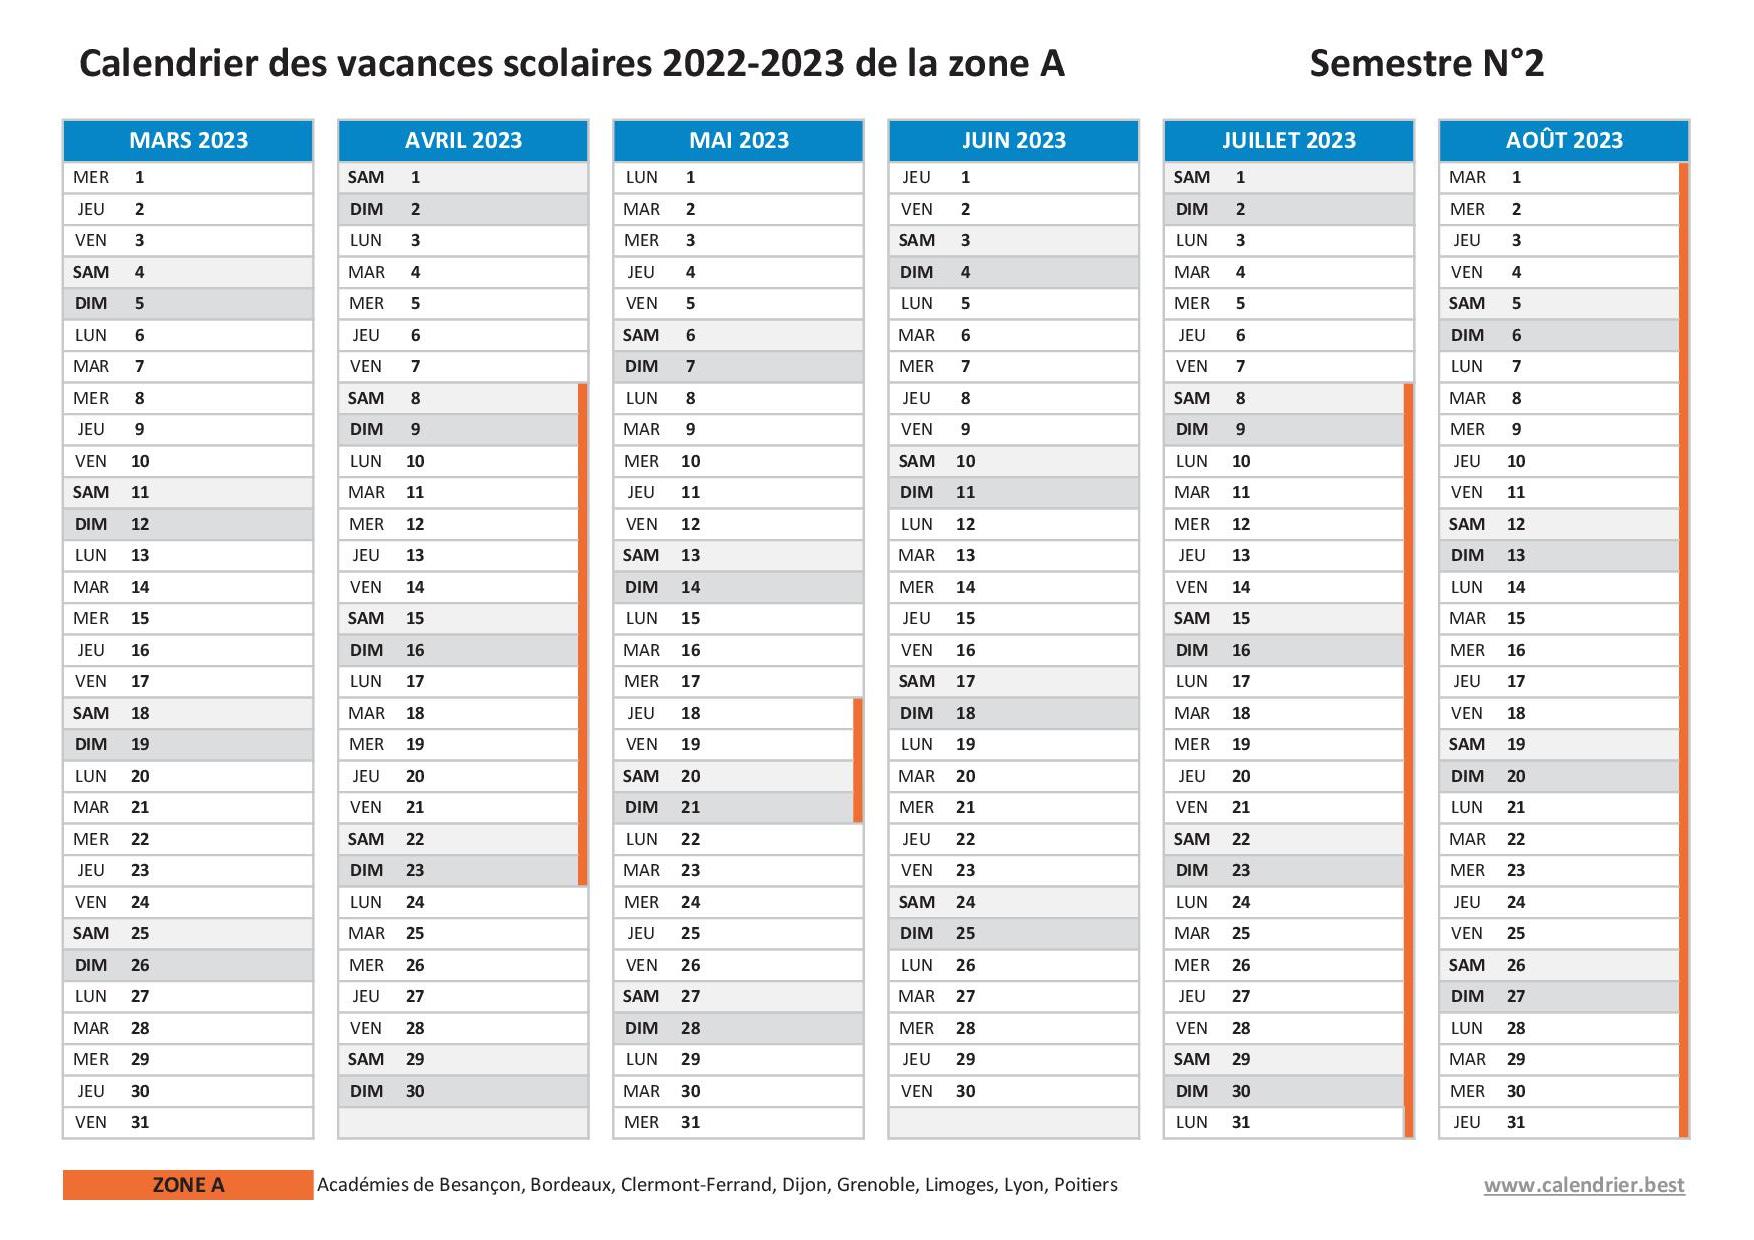 Vacances scolaires 2022 2023 Besançon : dates et calendrier scolaire 2022 -2023